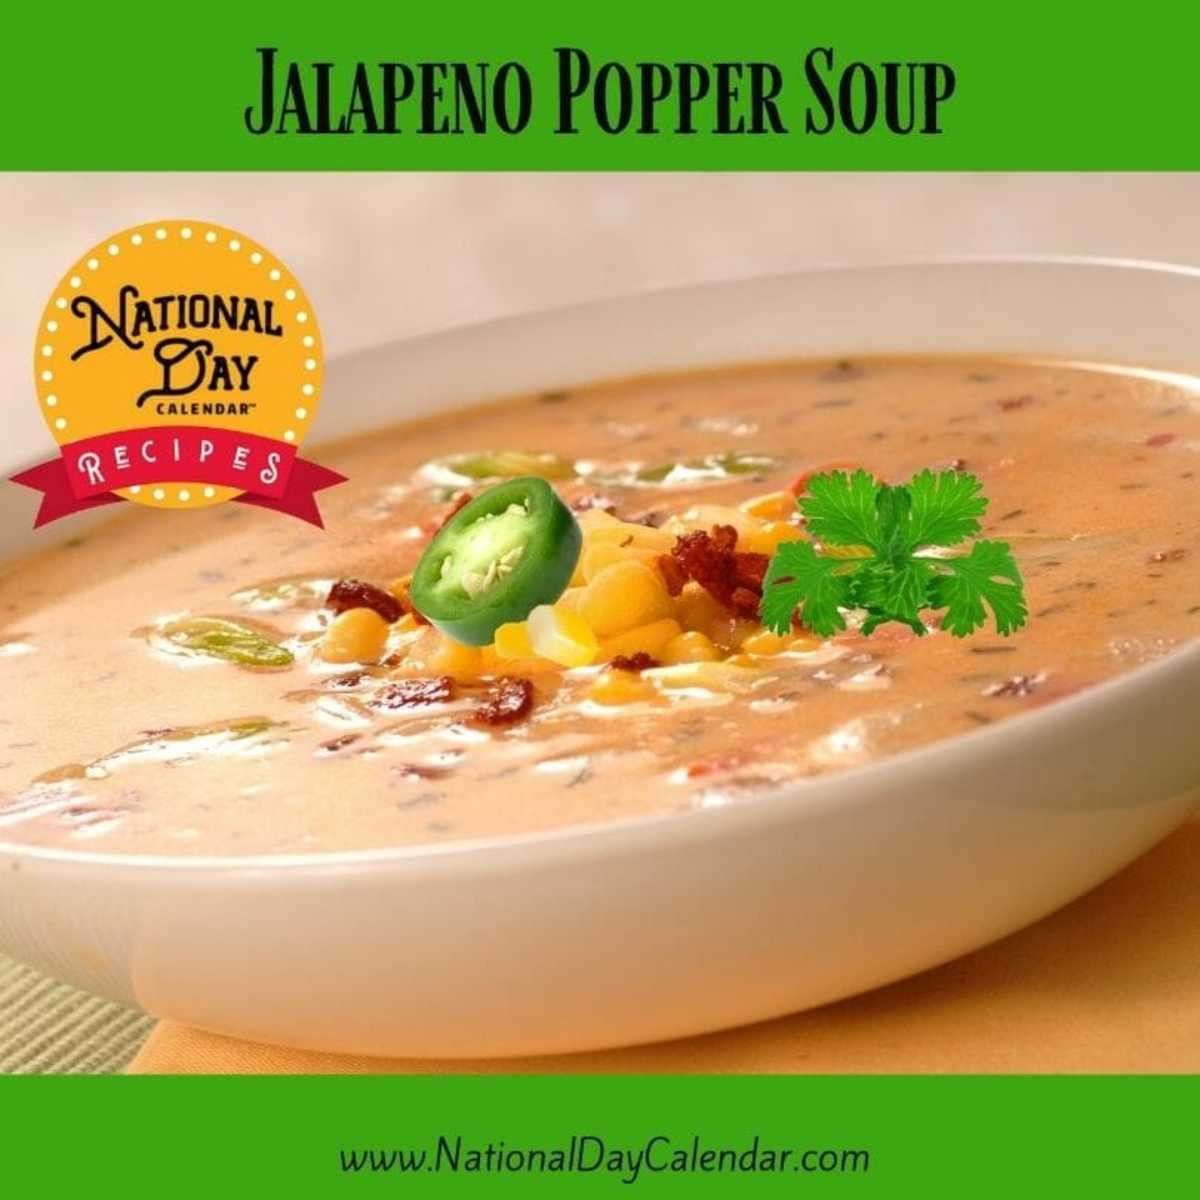 Jalapeno Popper Soup